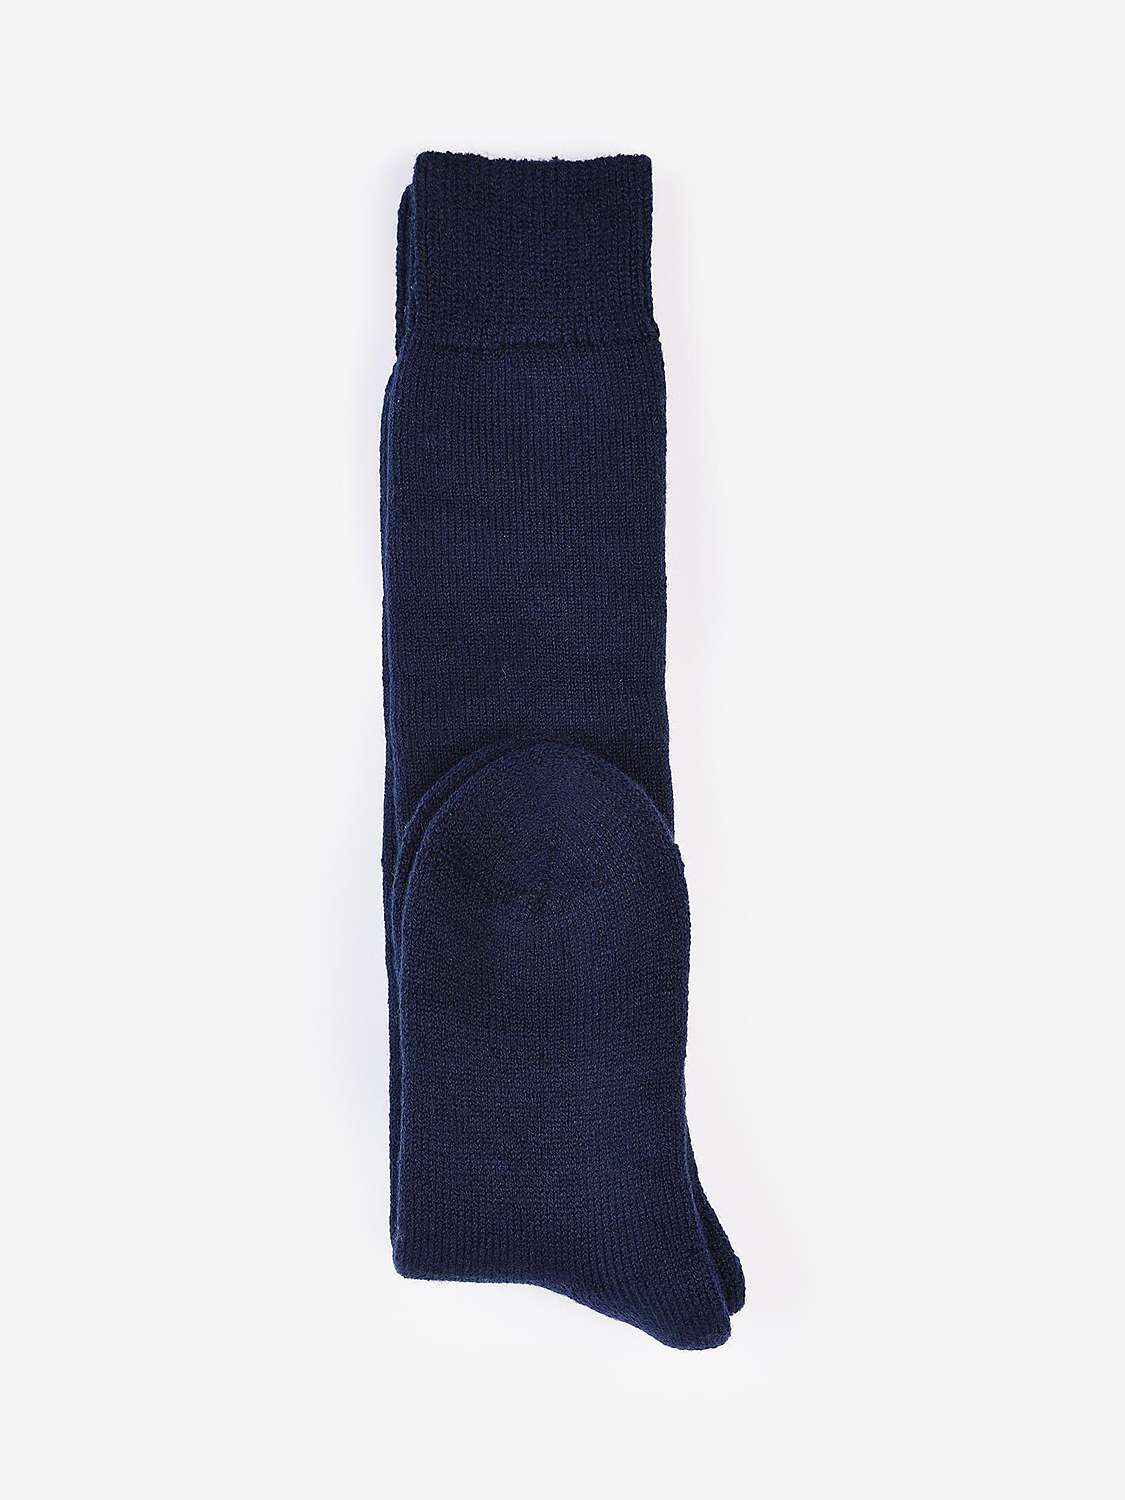 Barbour Wool Blend Wellington Knee Socks, Navy at John Lewis & Partners